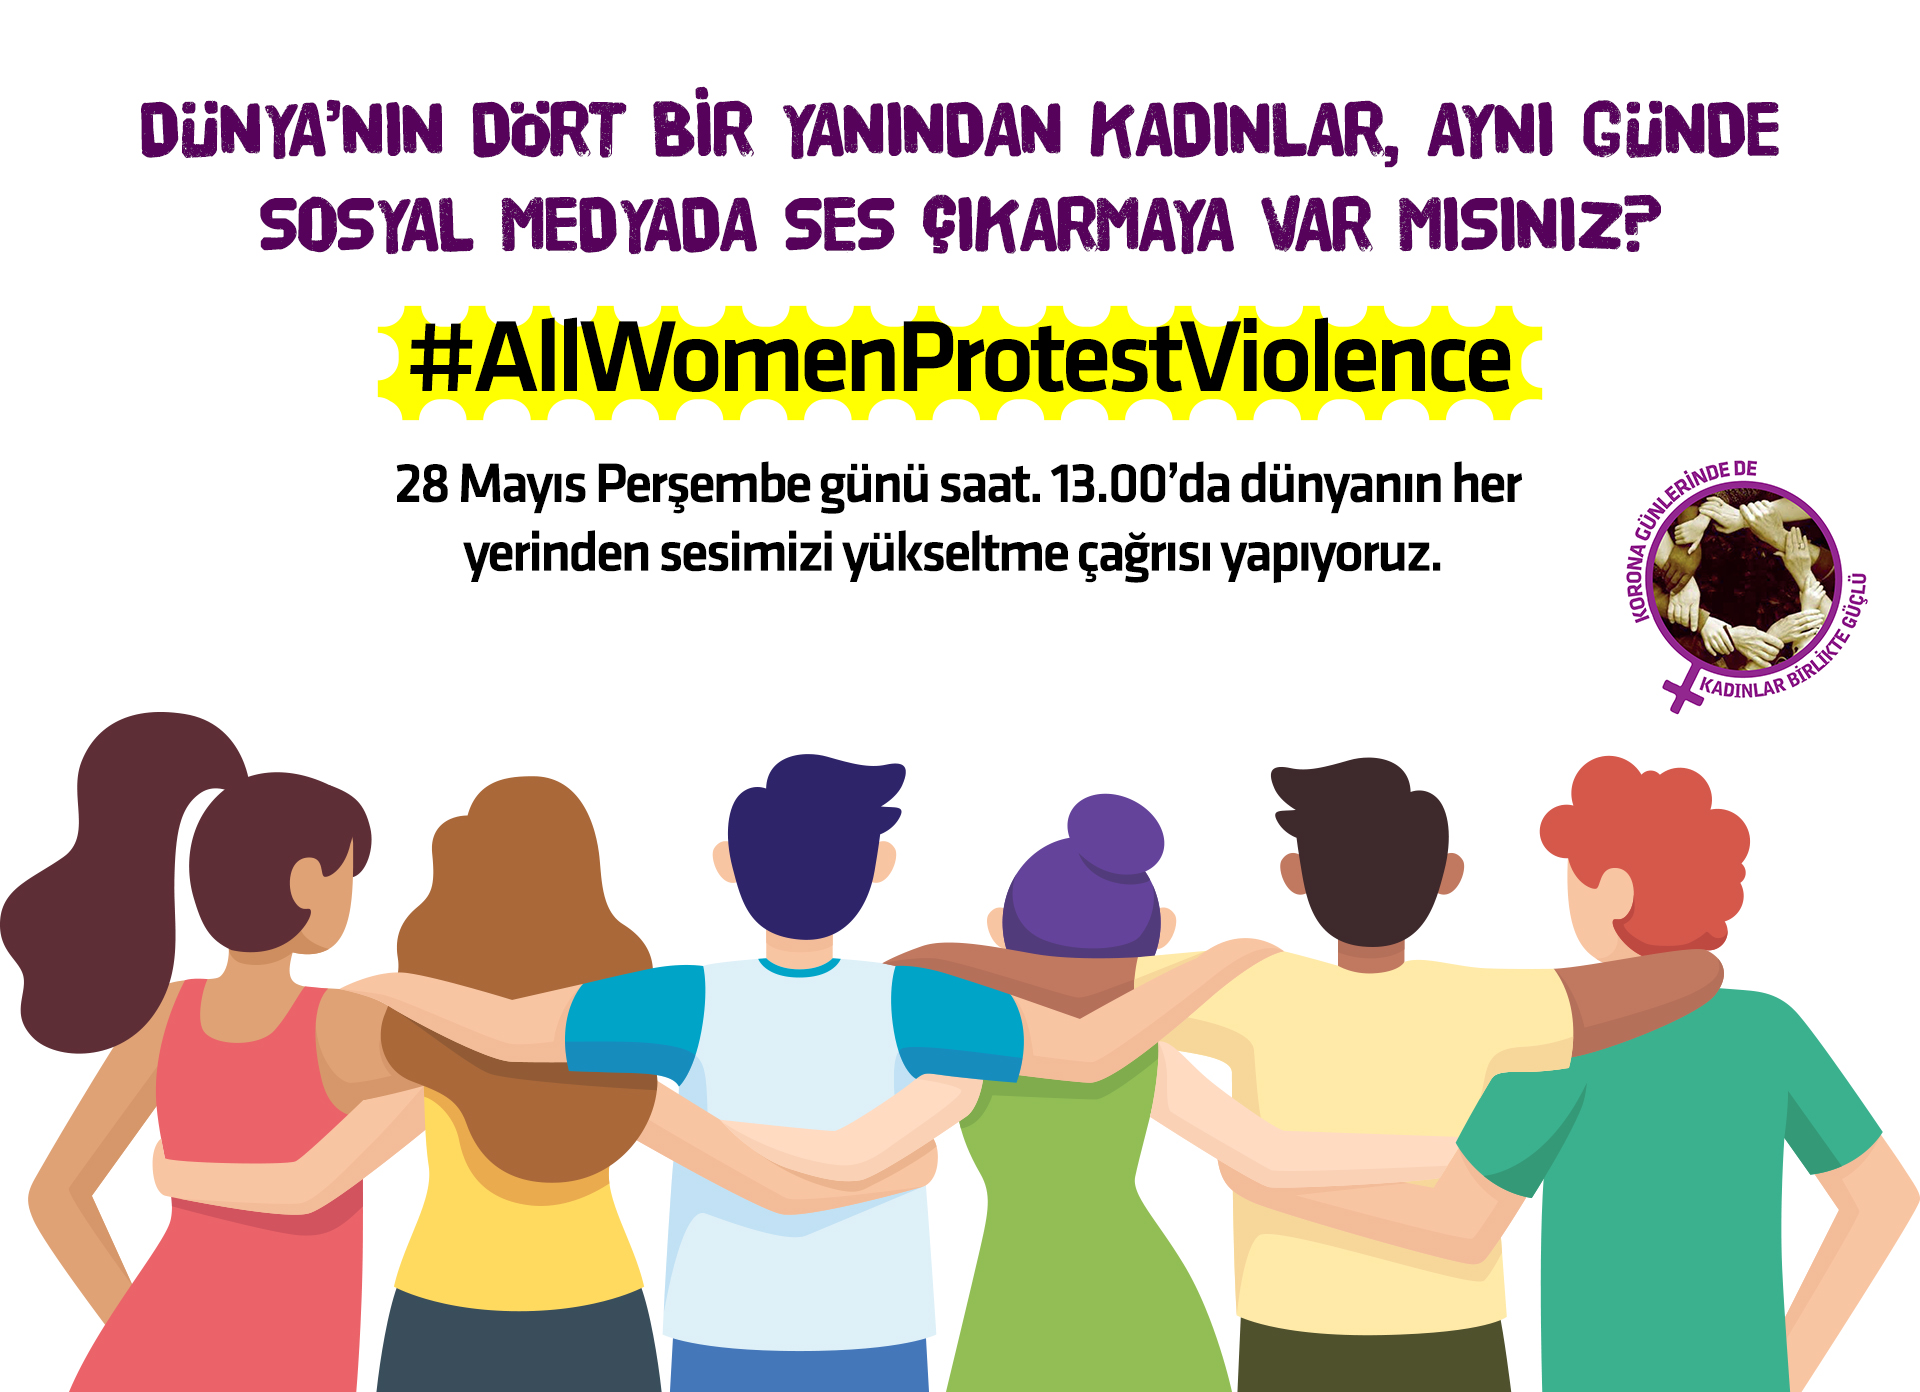 Tüm dünyada kadınlar seslerini birleştiriyor: AllWomenProtestViolence